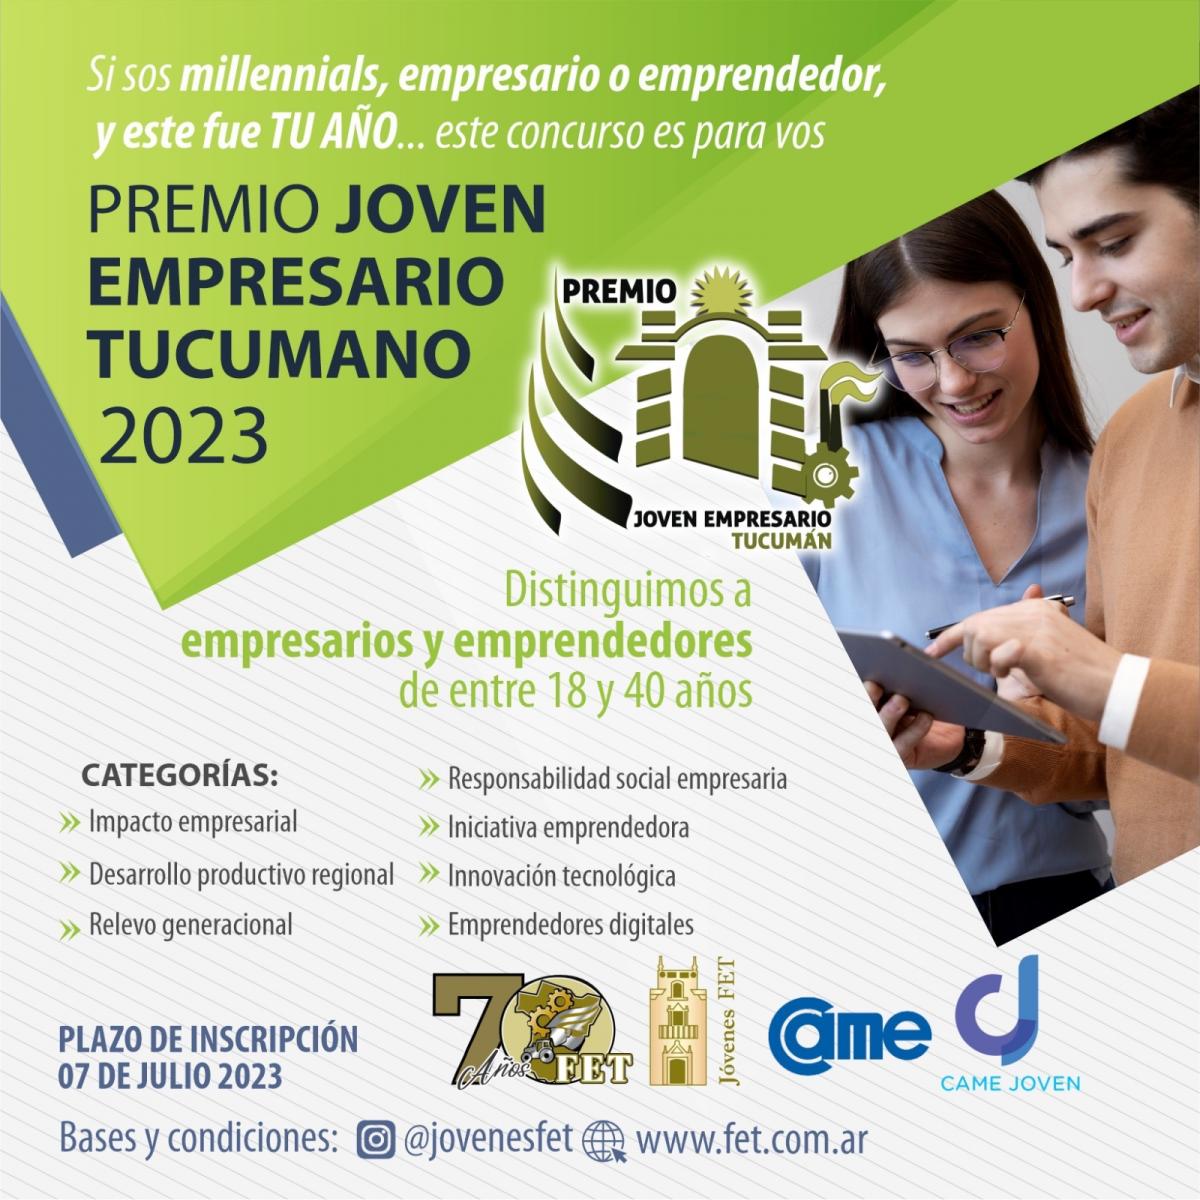 Abren las inscripciones para participar del premio Joven Empresario Tucumano